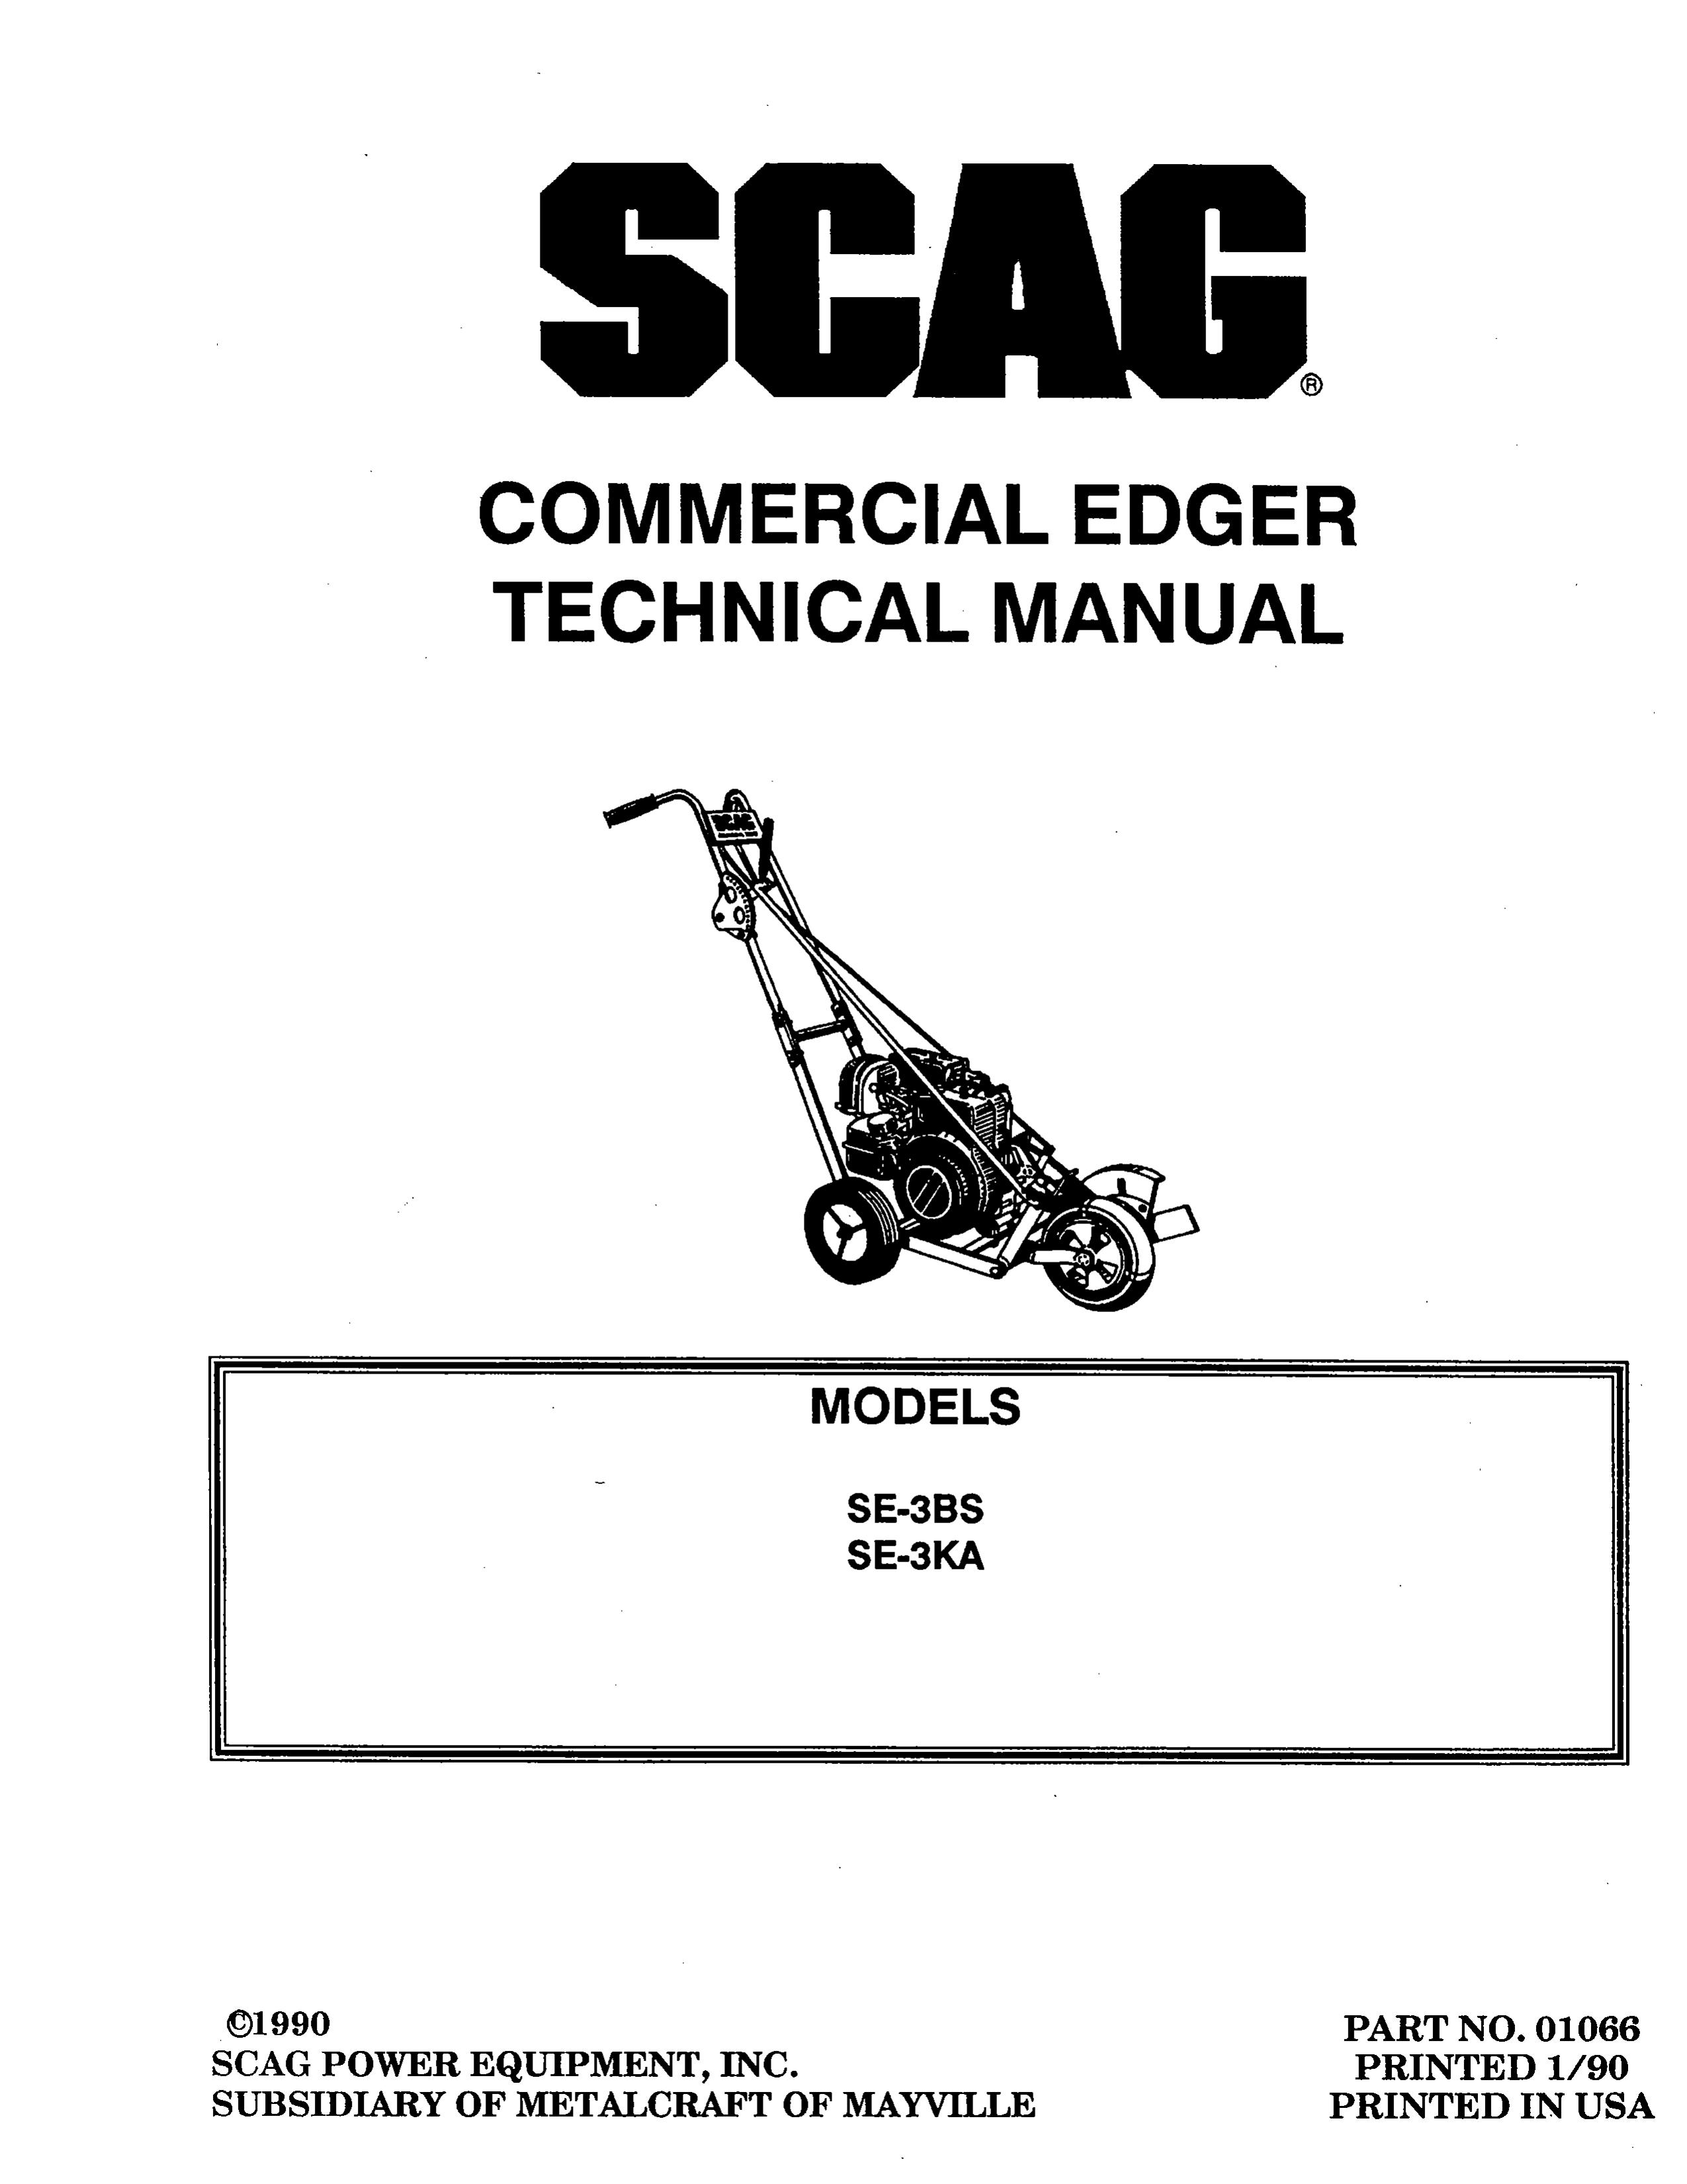 Scag Power Equipment SE-3BS Edger User Manual